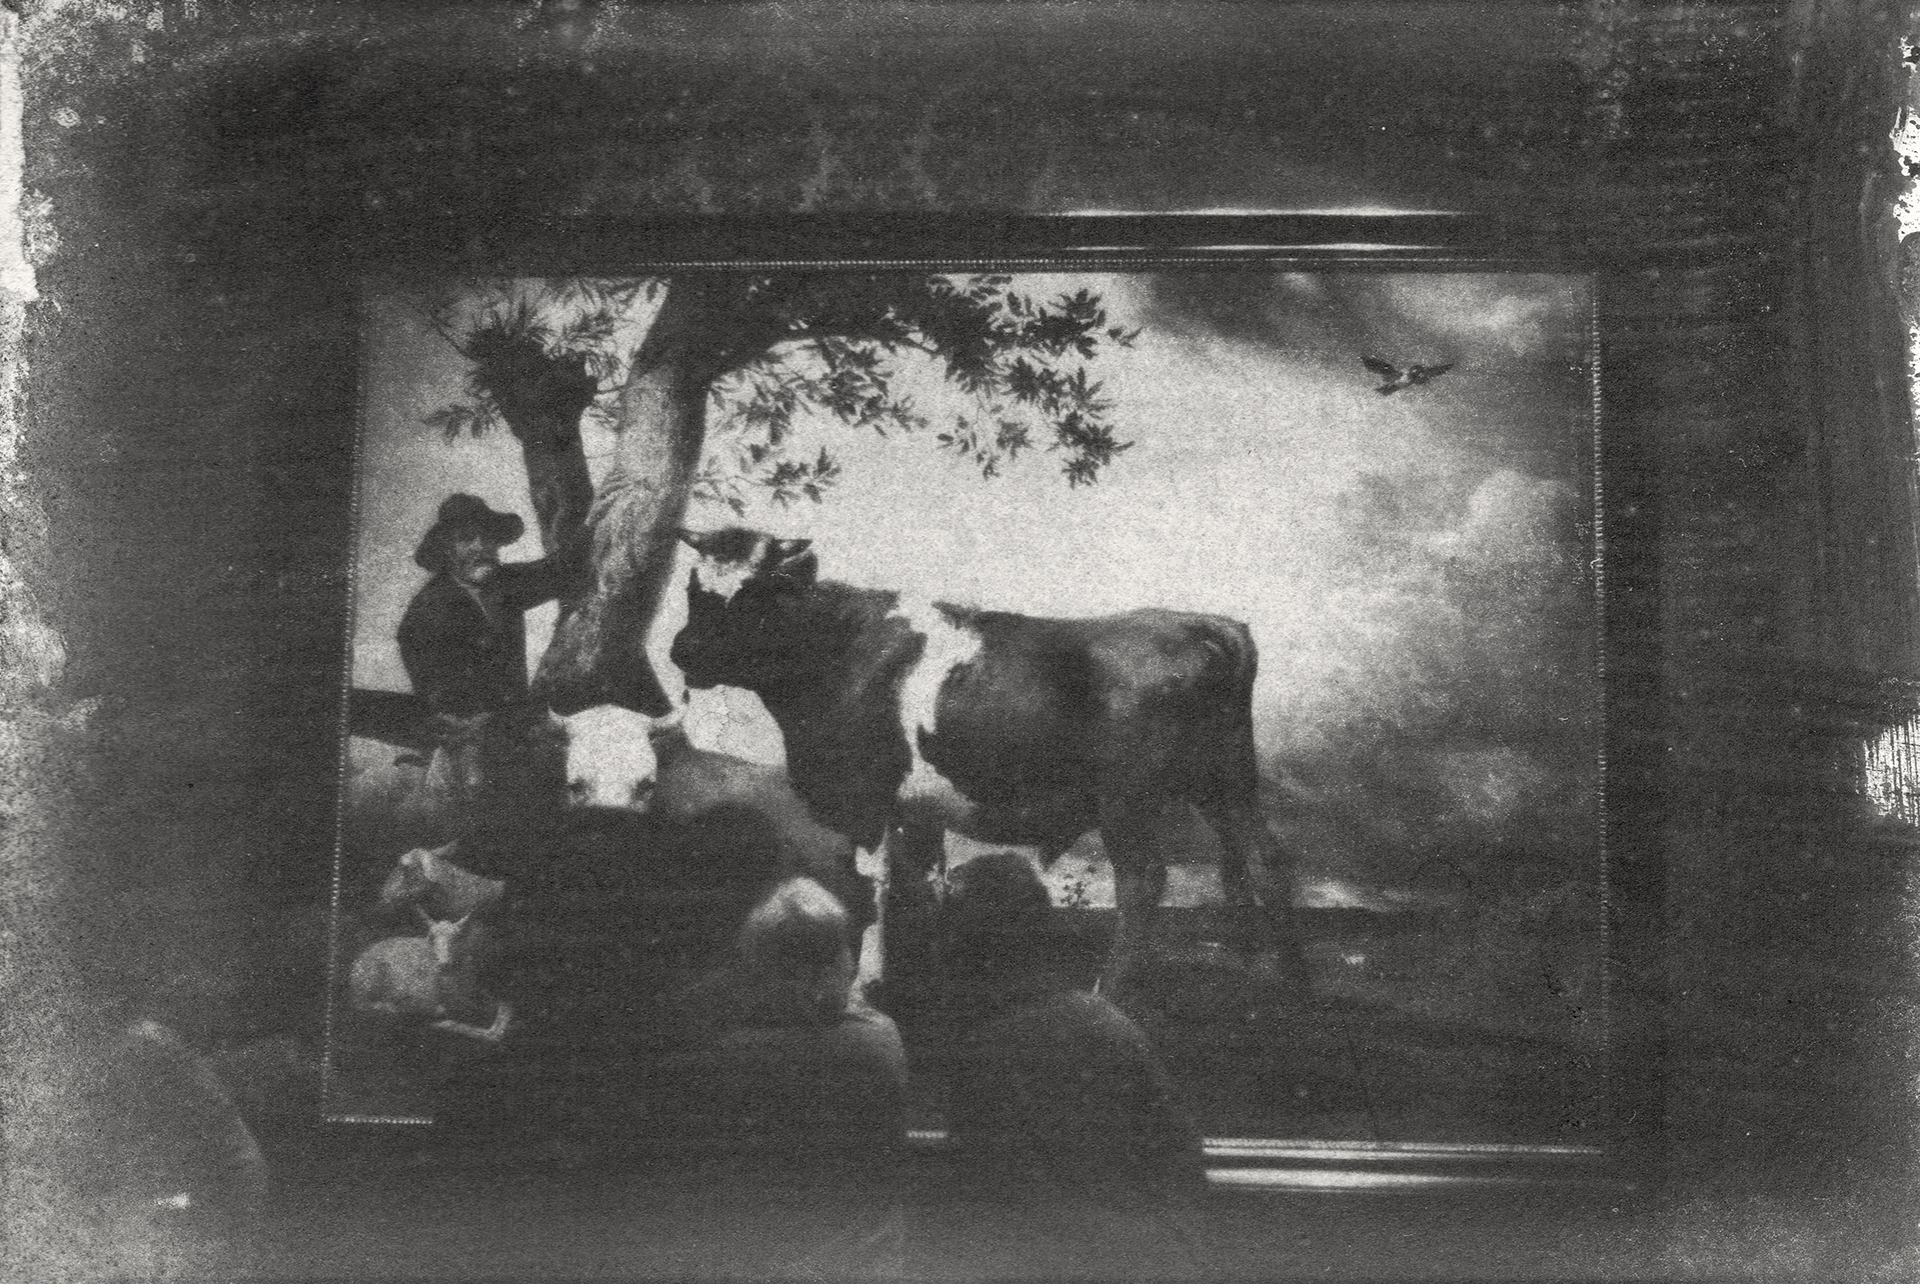 Abbildung eines Gummidruckes von Marcel van Eeden, die Besucher*innen vor einem Gemälde zeigt.